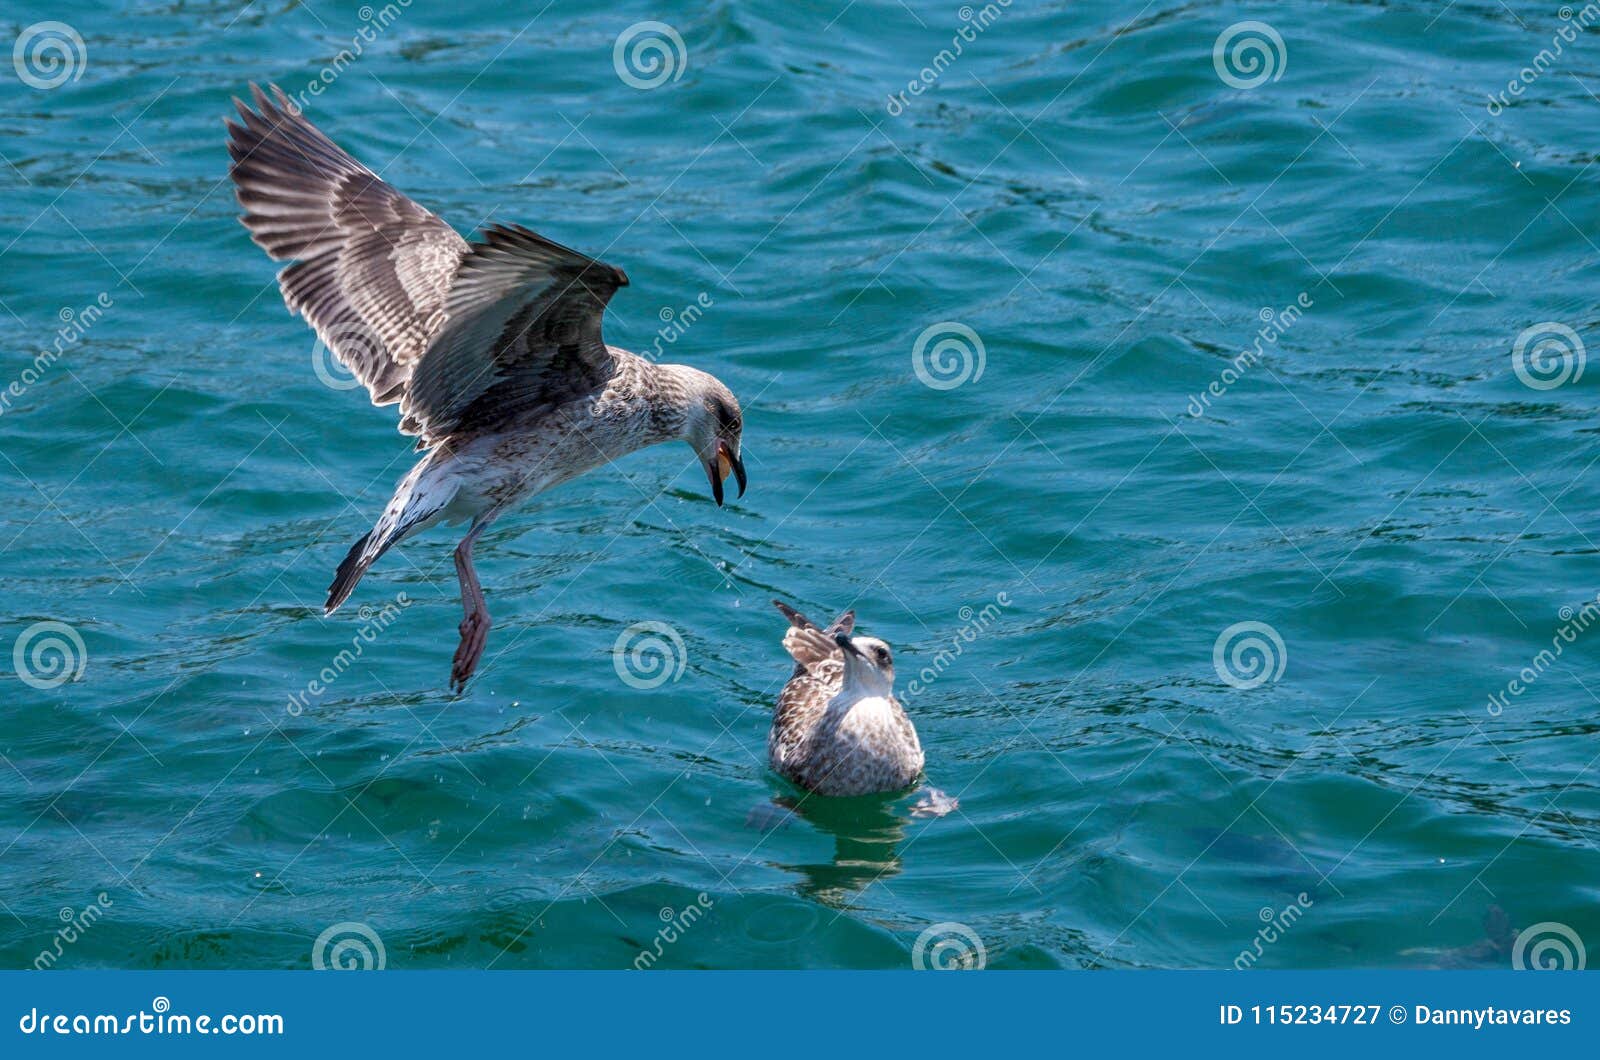 bird on the water feeding another bird